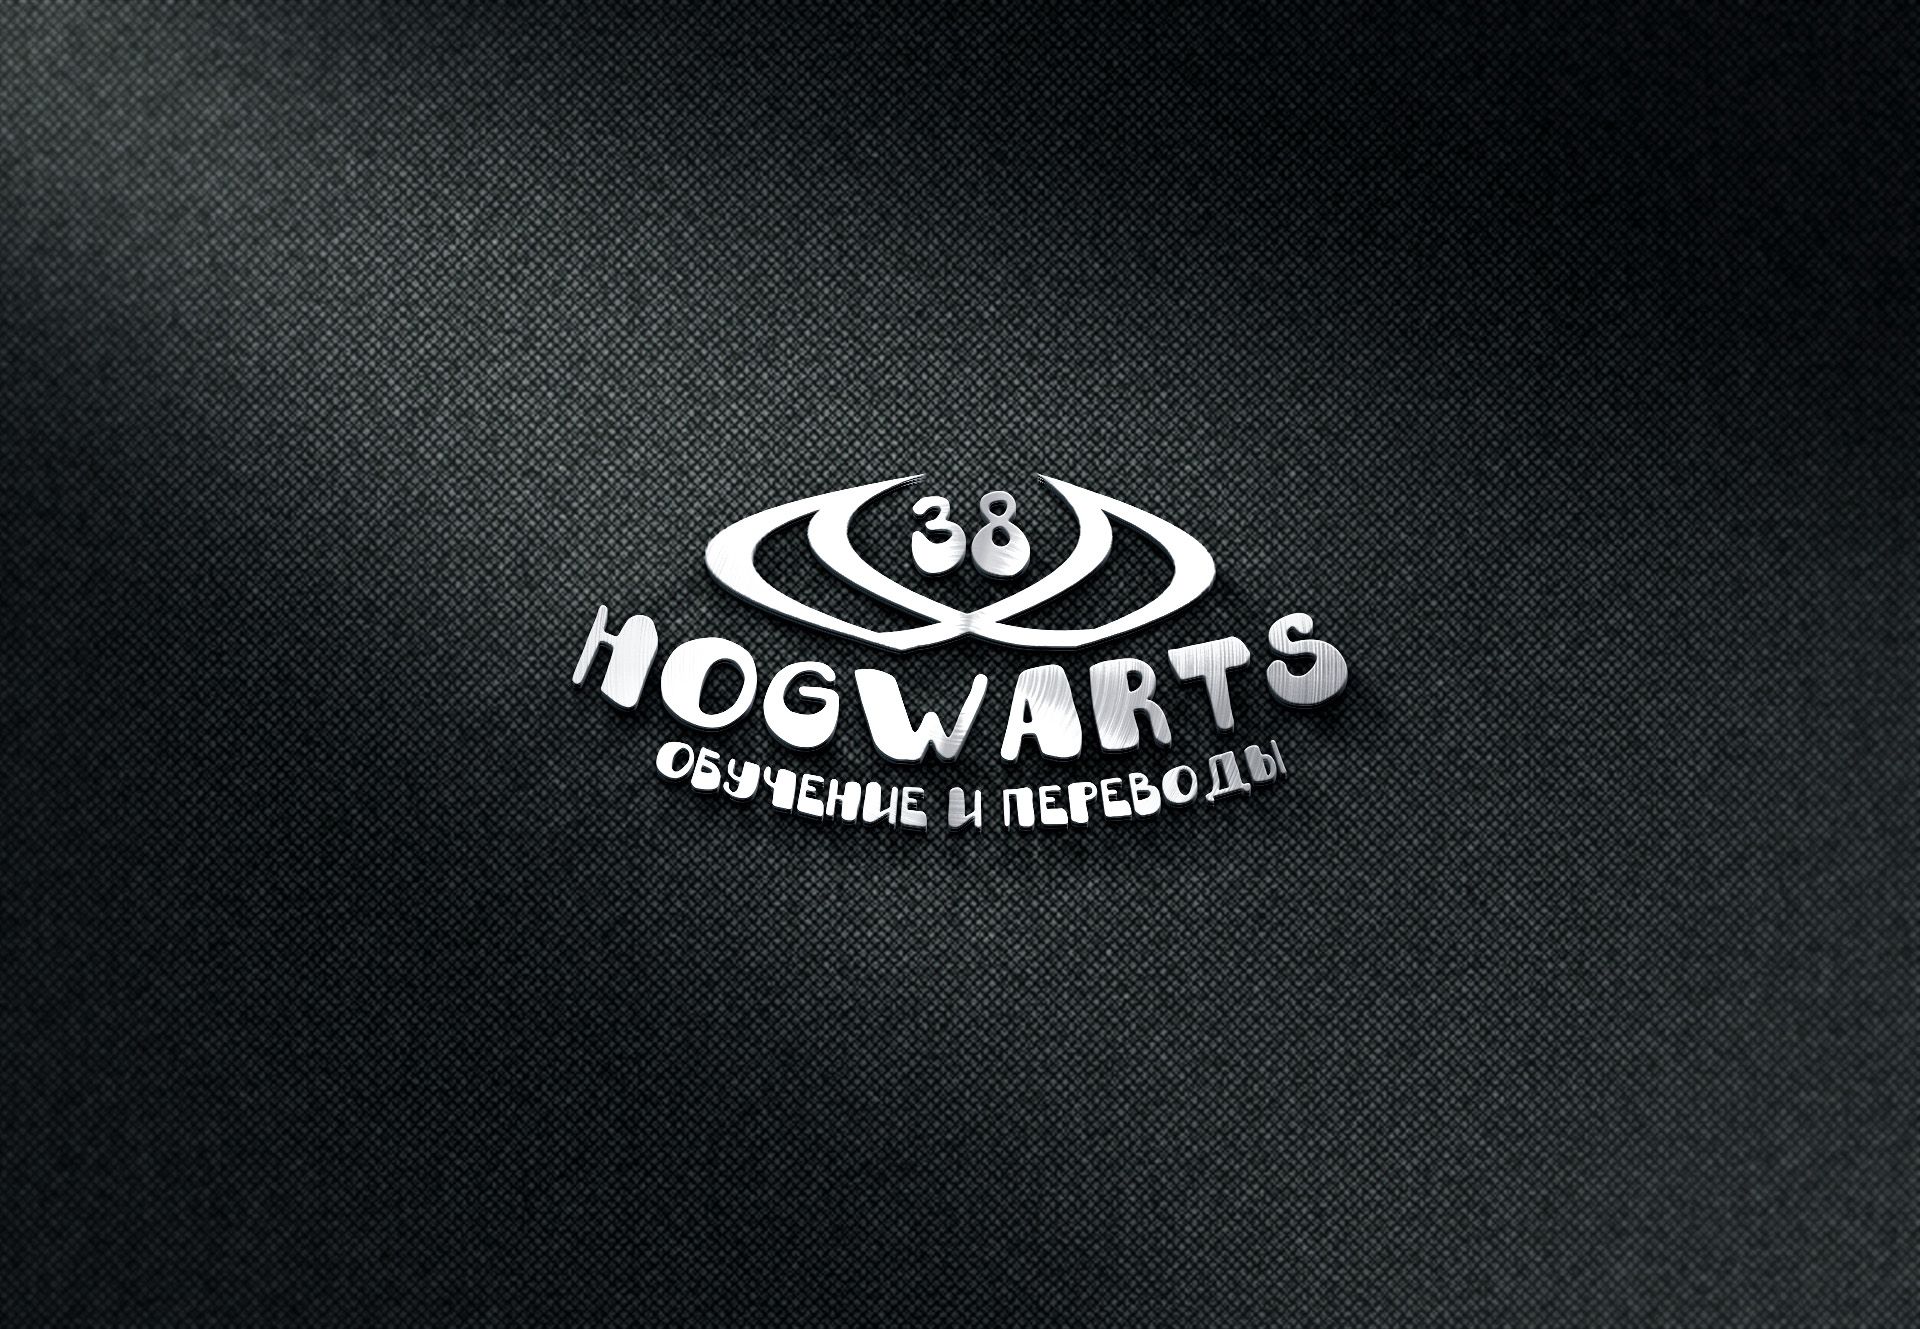 Лого для сети языковых школ HOGWARTS (38 языков) - дизайнер Zaza